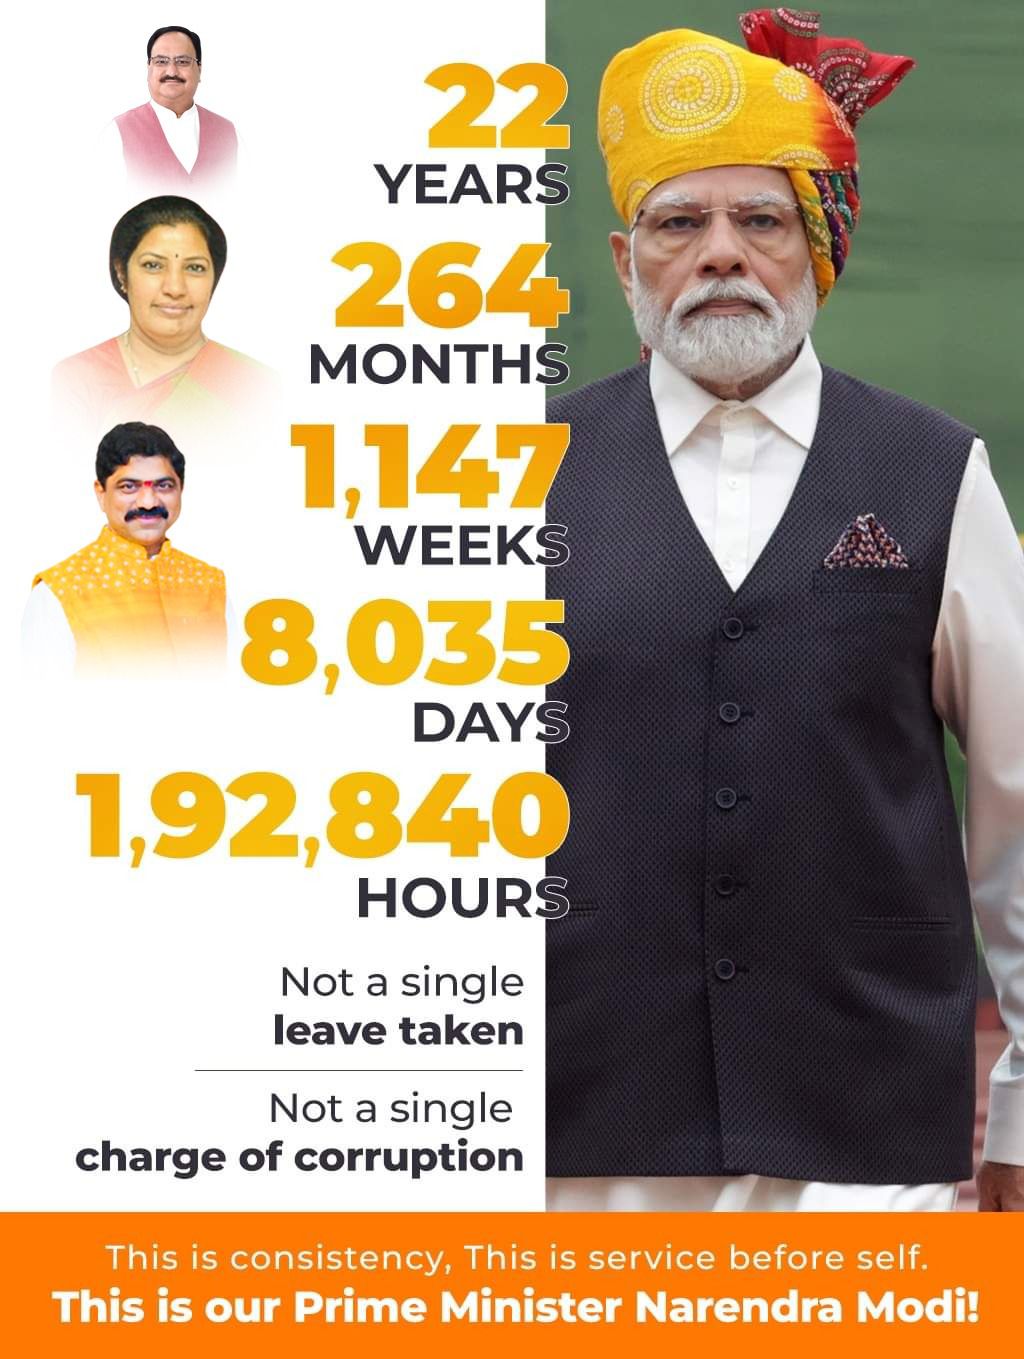 PM Modi has not taken a single leave in 22 years